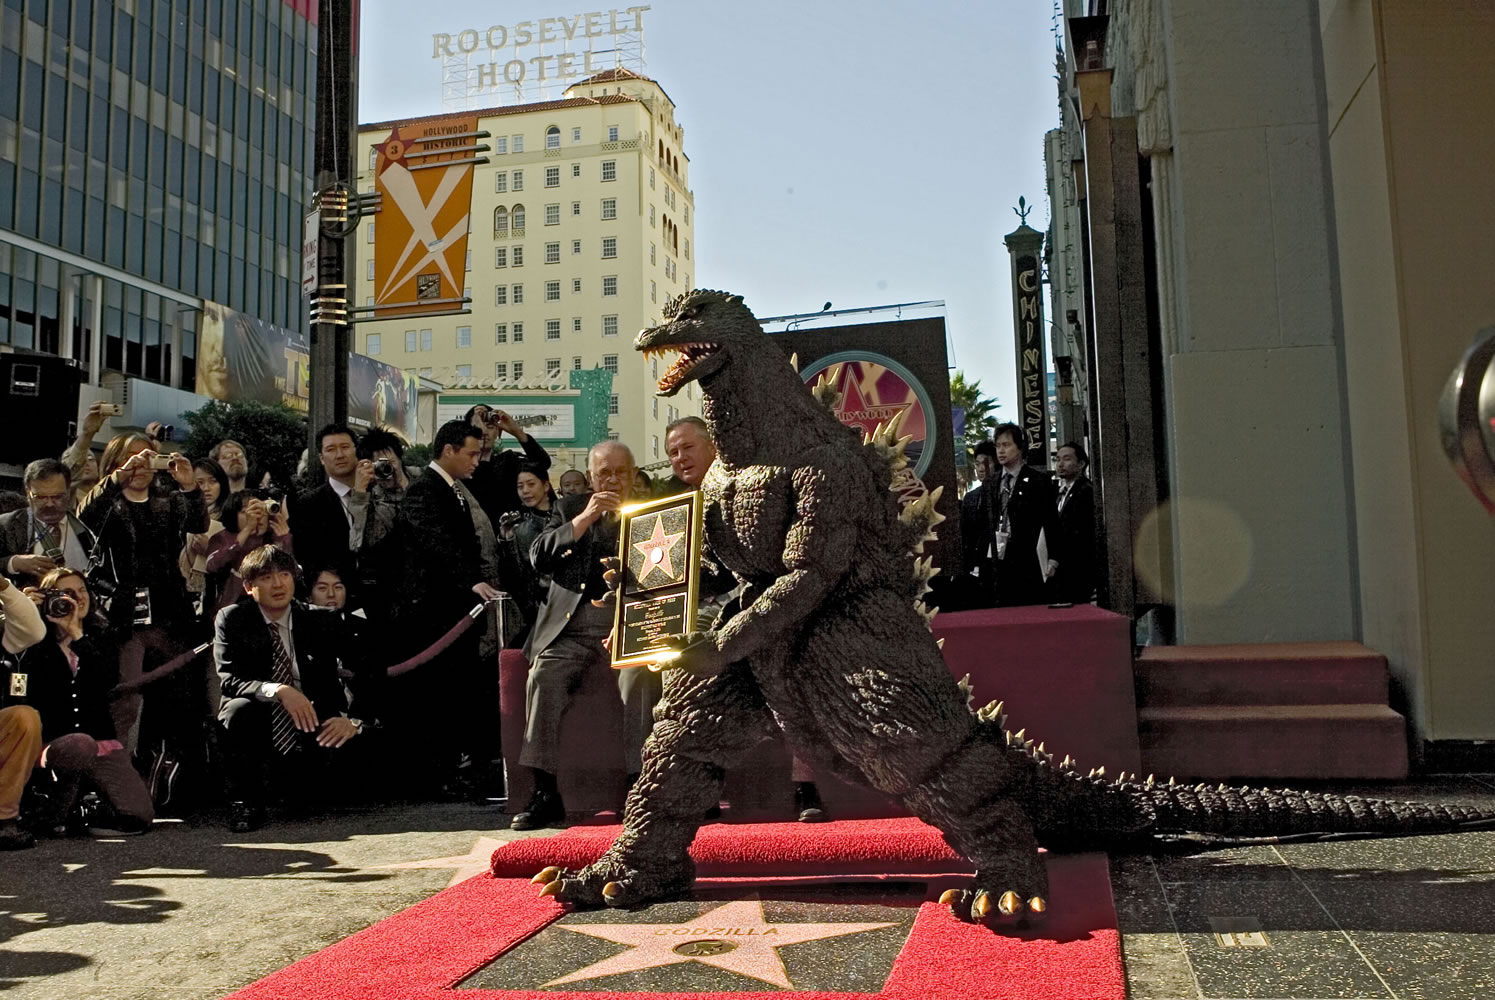 The Godzilla character celebrates its 50th anniversary on Nov.